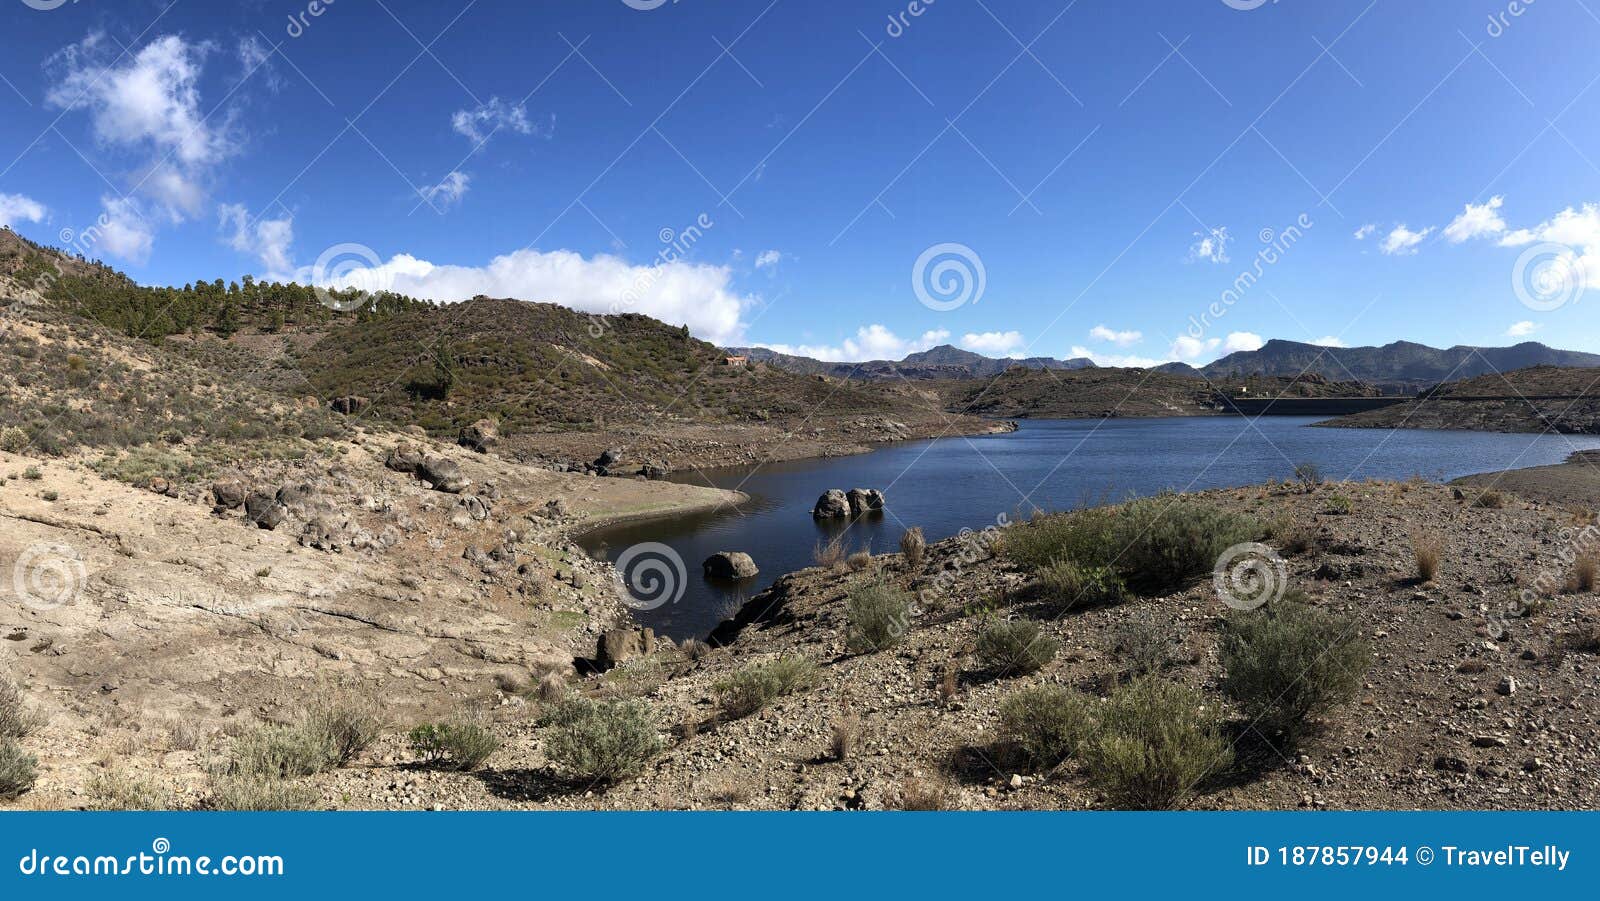 scenery around las ninas reservoir